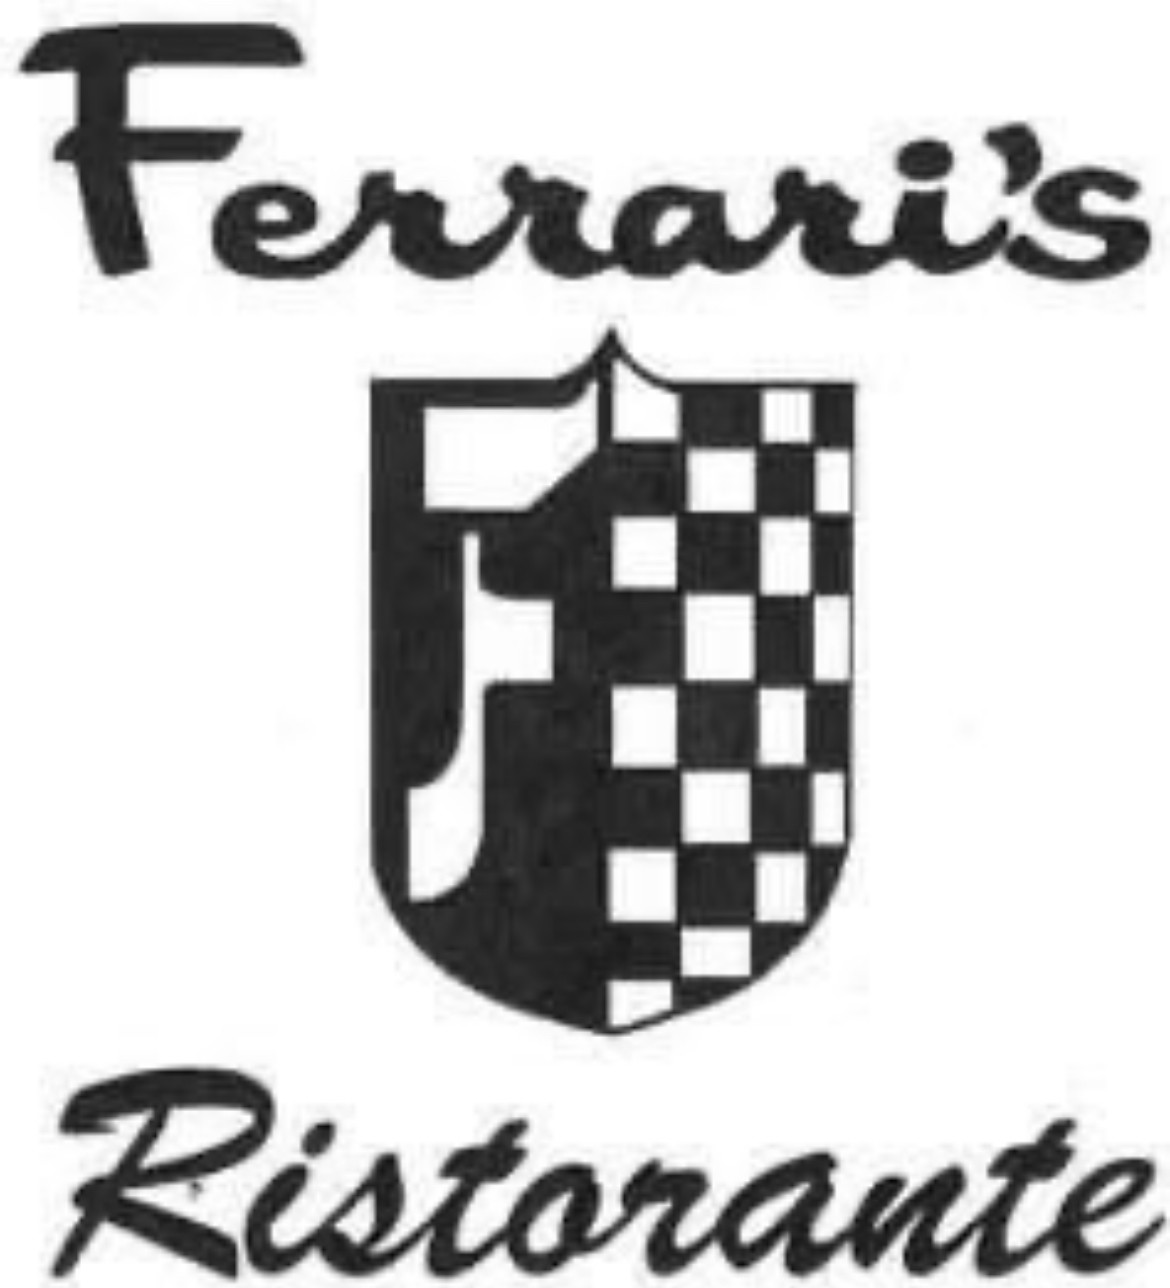 Ferrari's Ristorante - ACCOUNT